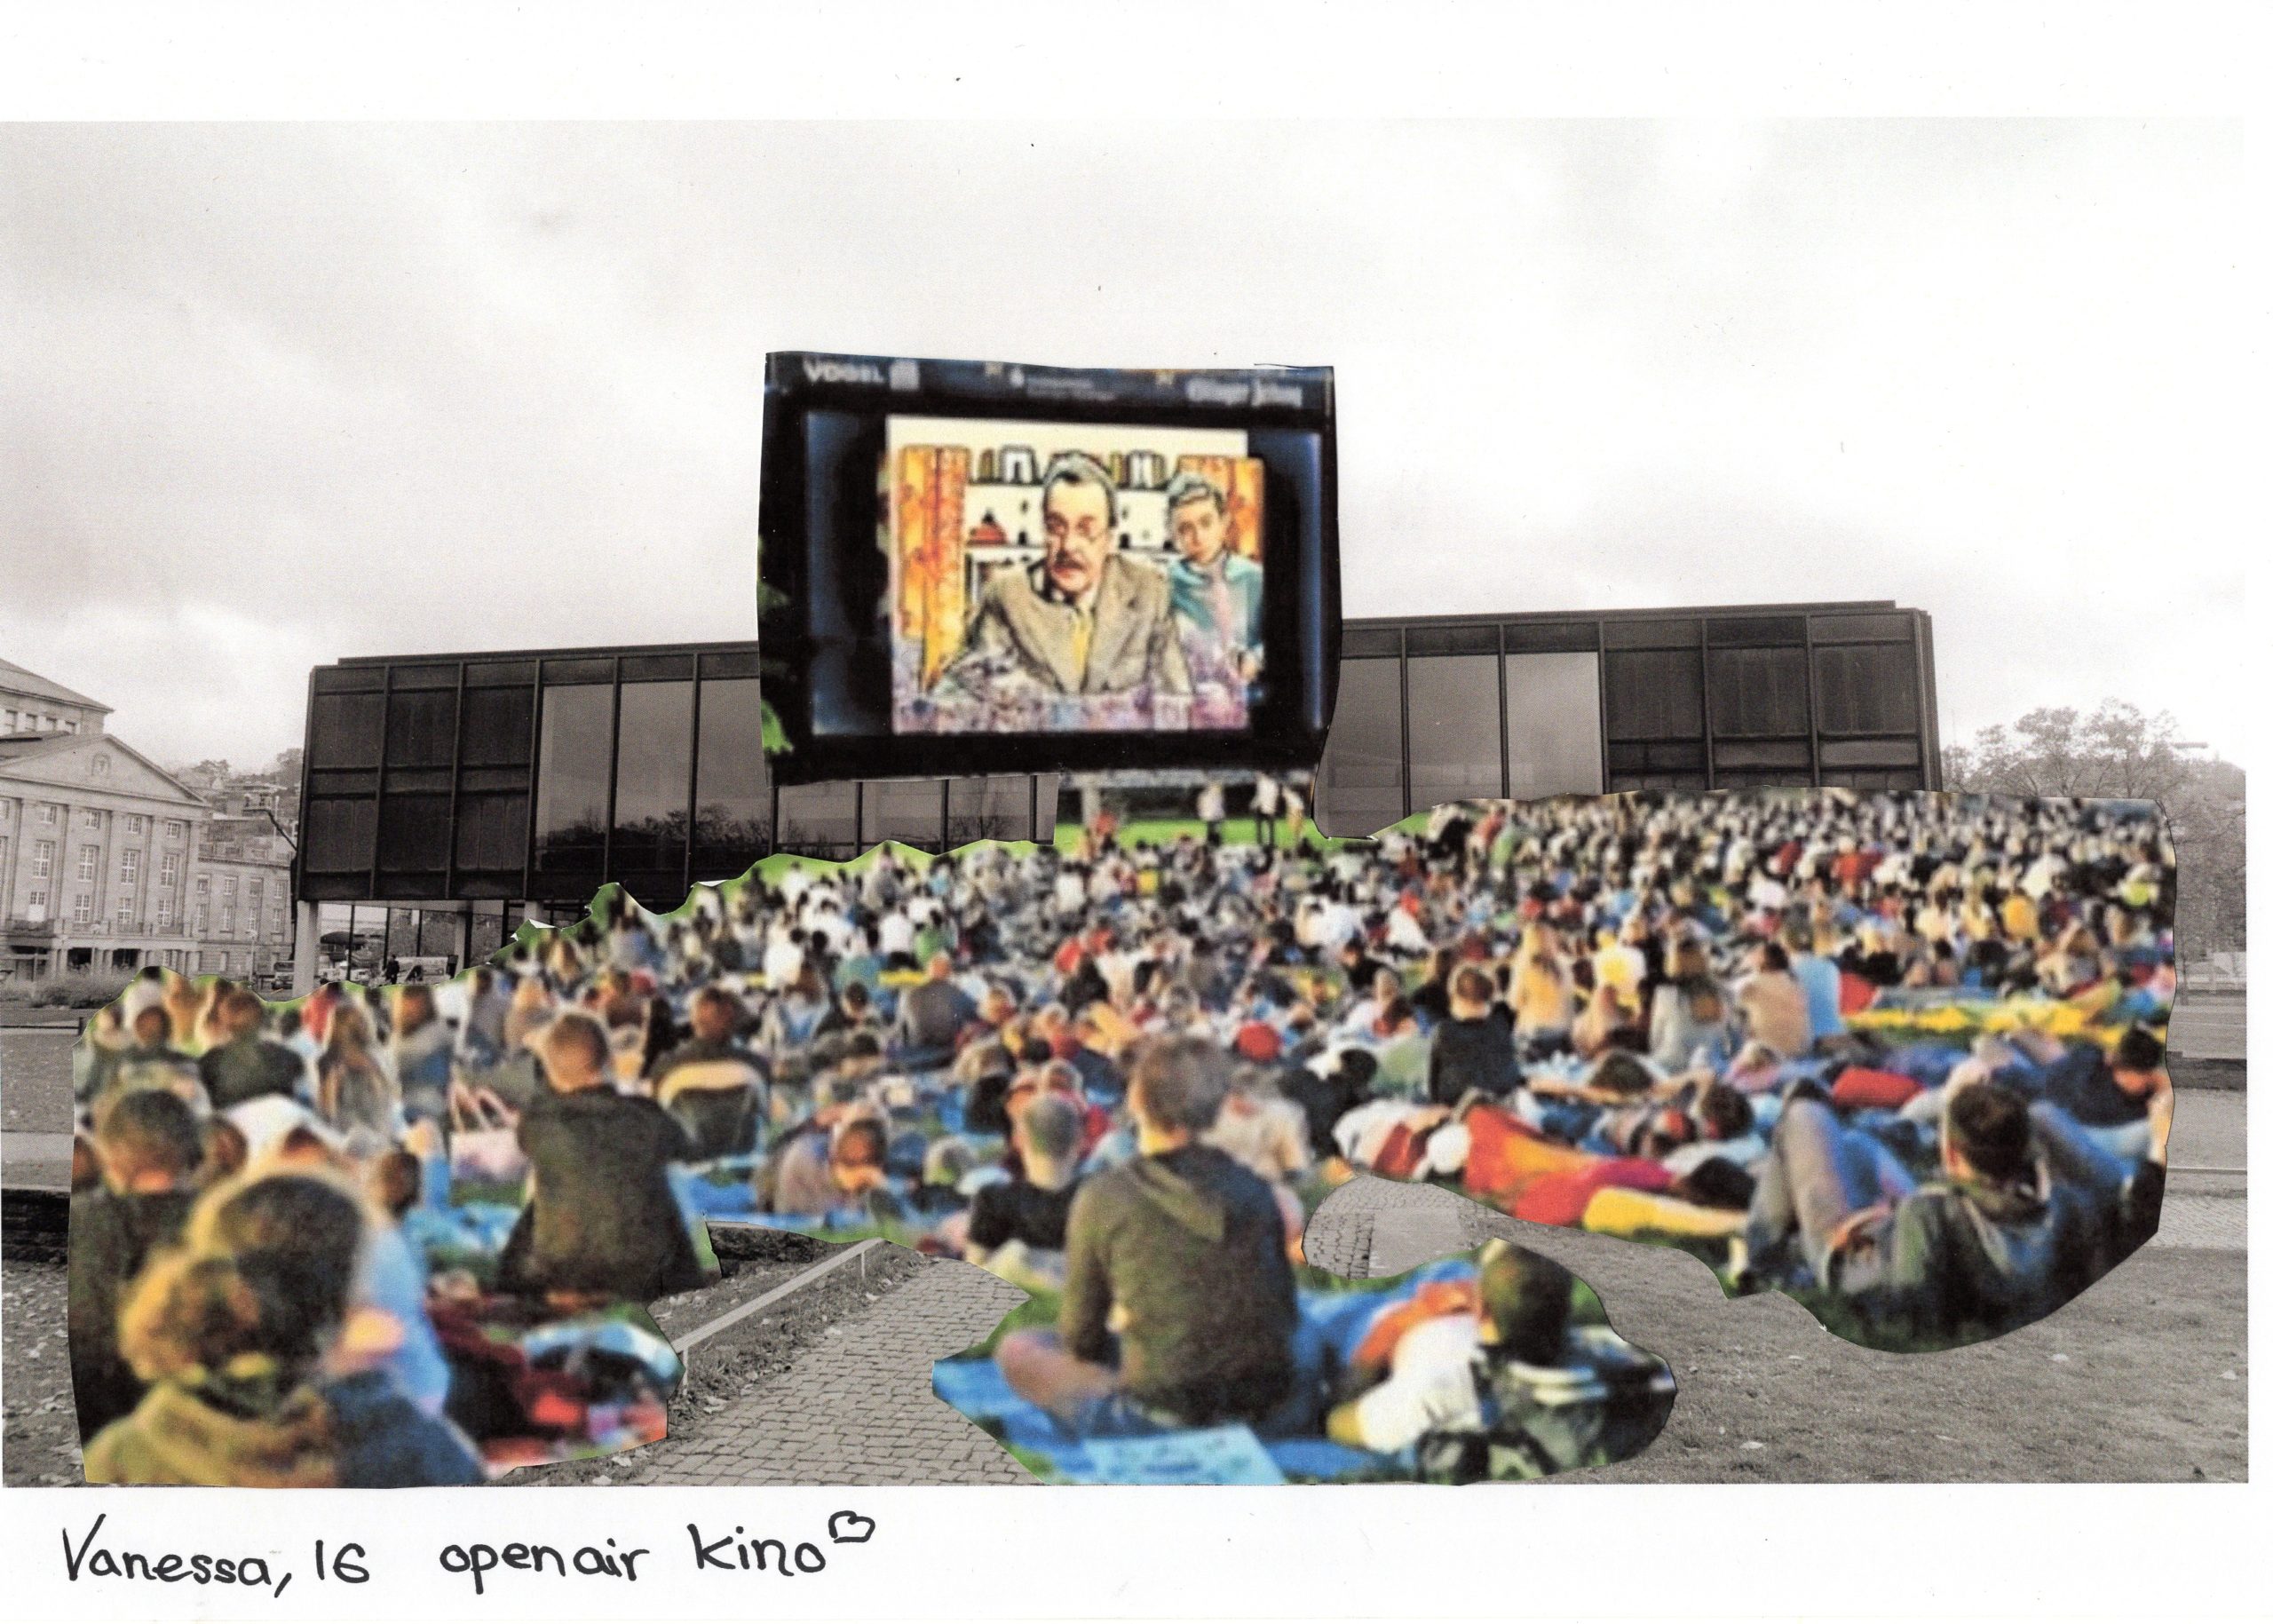 Das Bild zeigt den Landtag - dort ist eine Kinoleinwand angebracht, davor sitzen viele Menschen und genießen einen Kinofilm